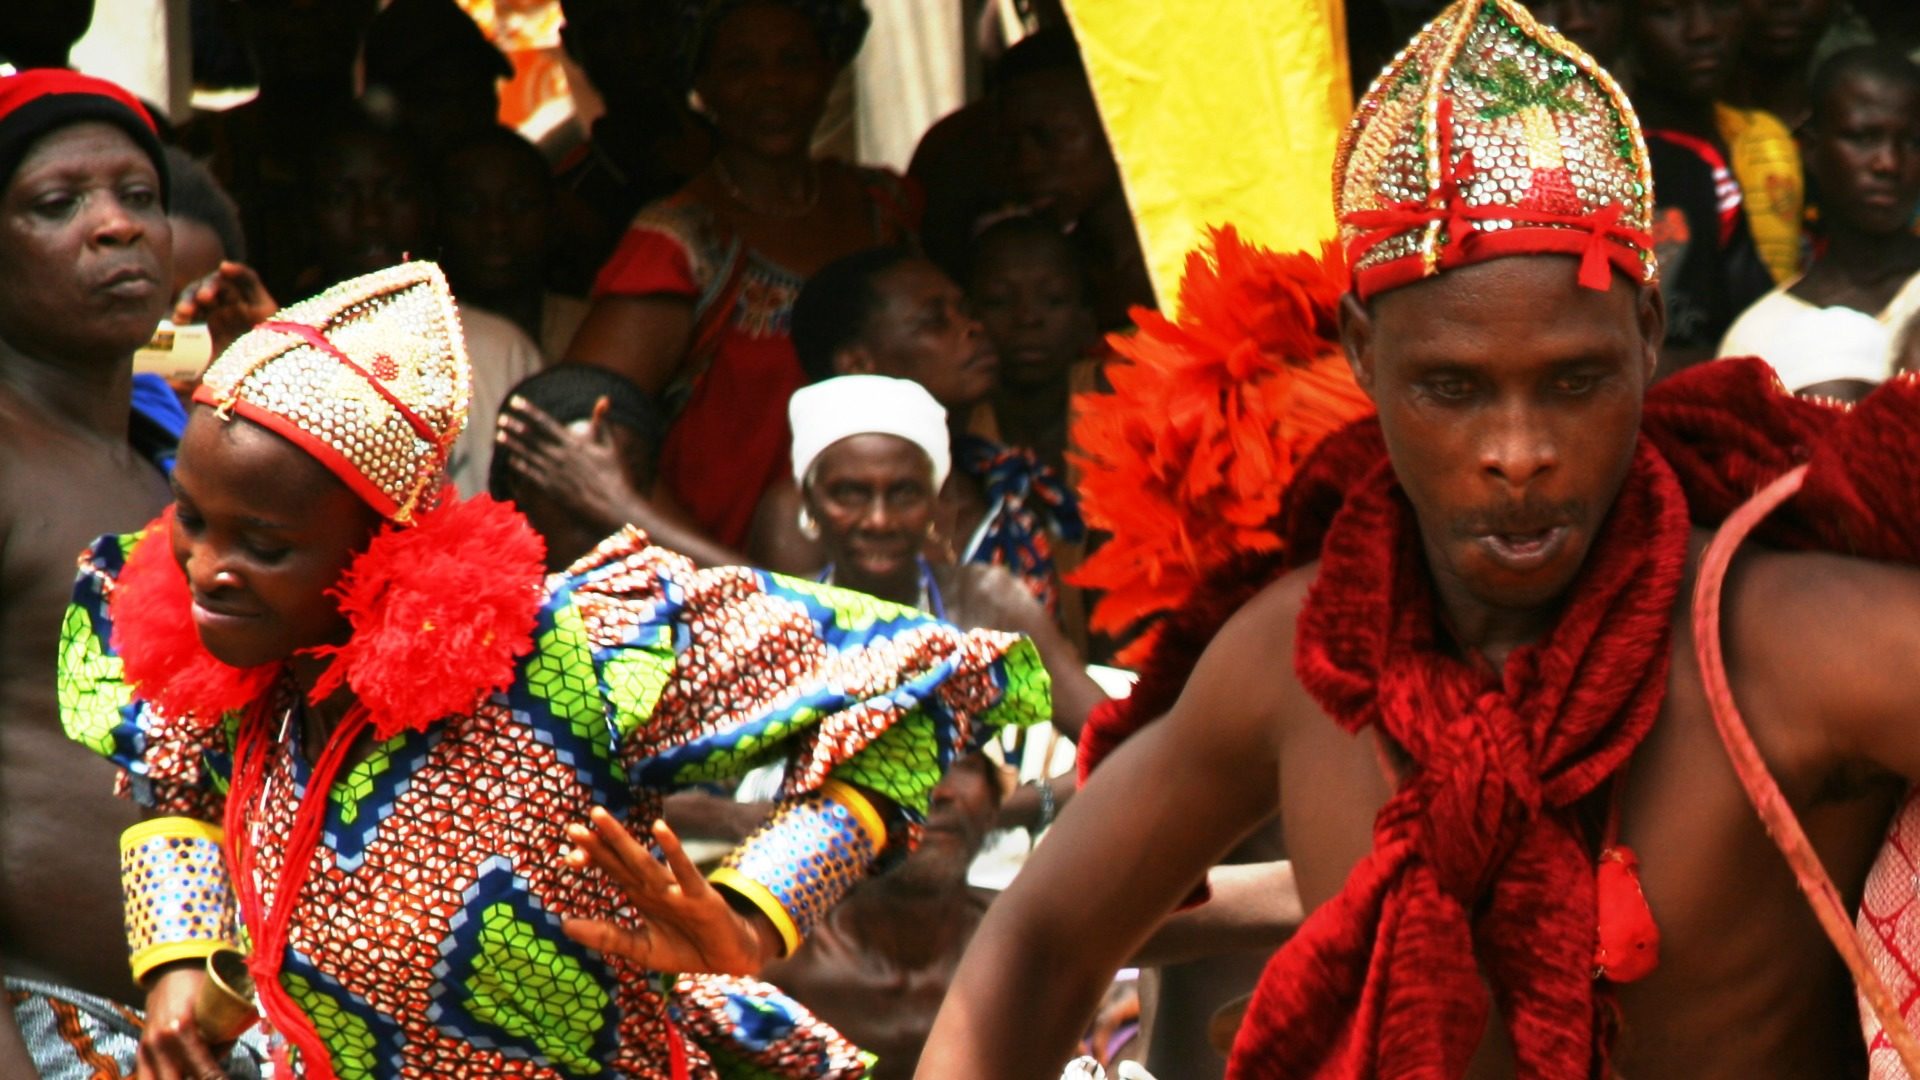 Les religions cohabitent pacifiquement au Bénin (Photo: Adam Cohn/Flickr/CC BY-NC-ND 2.0)